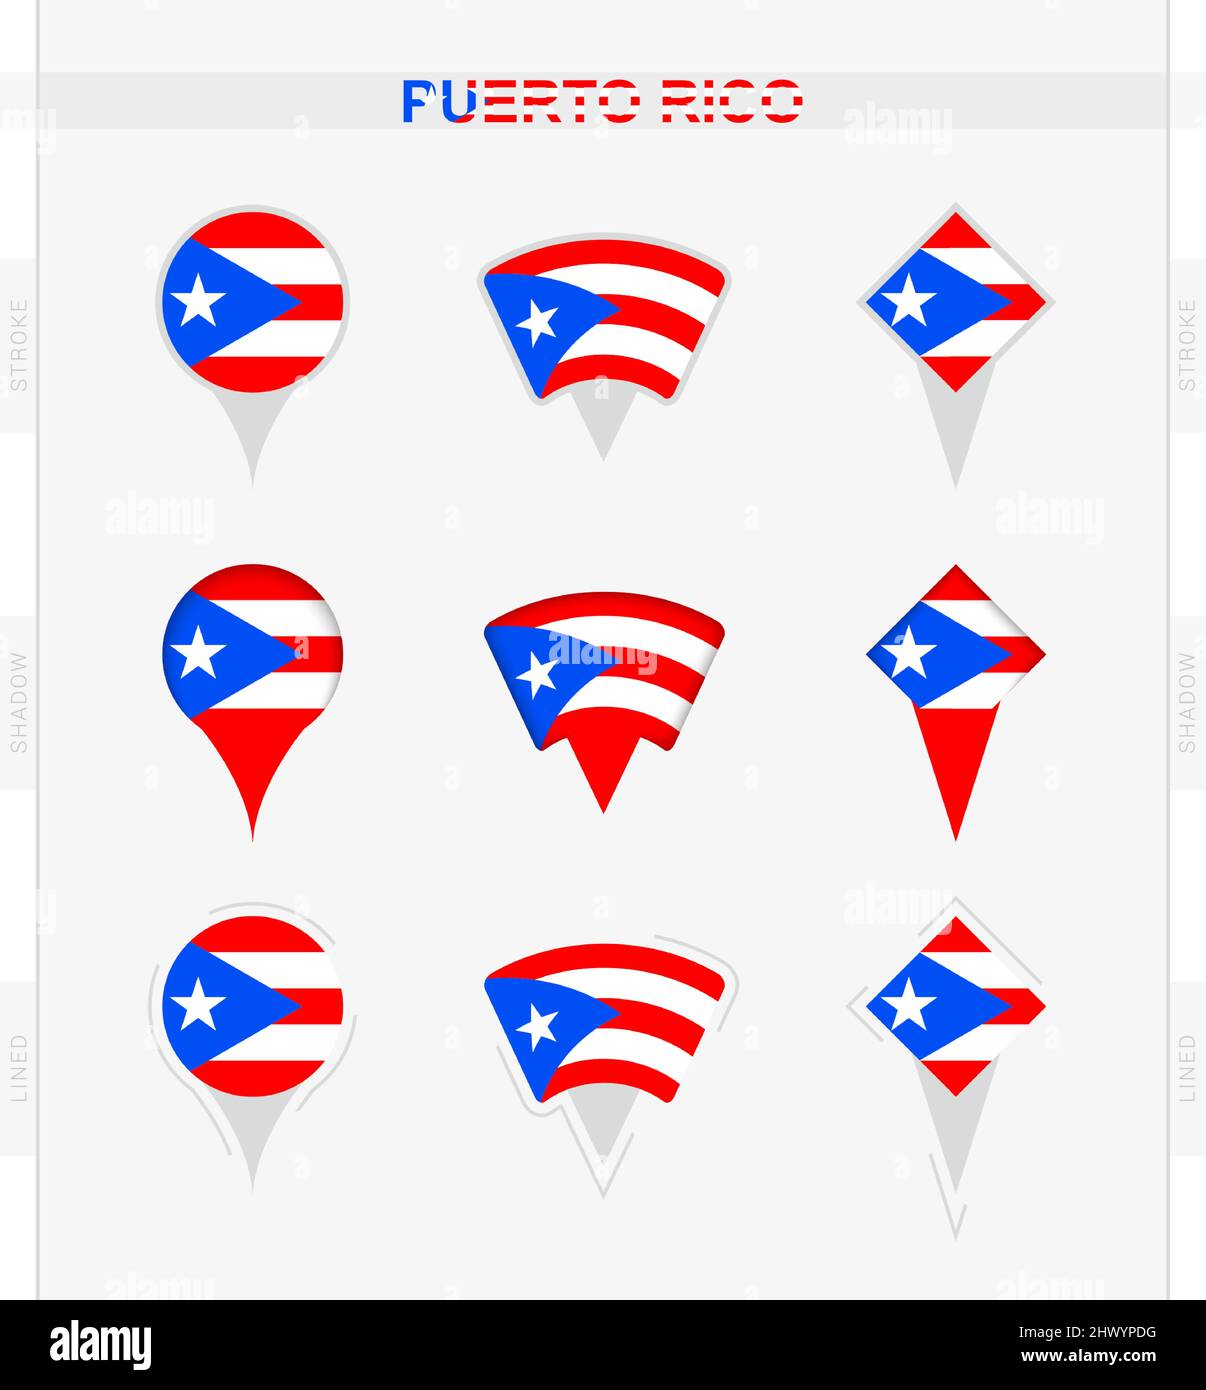 Bandera De Puerto Rico Conjunto De Iconos De Alfiler De Ubicación De 9520